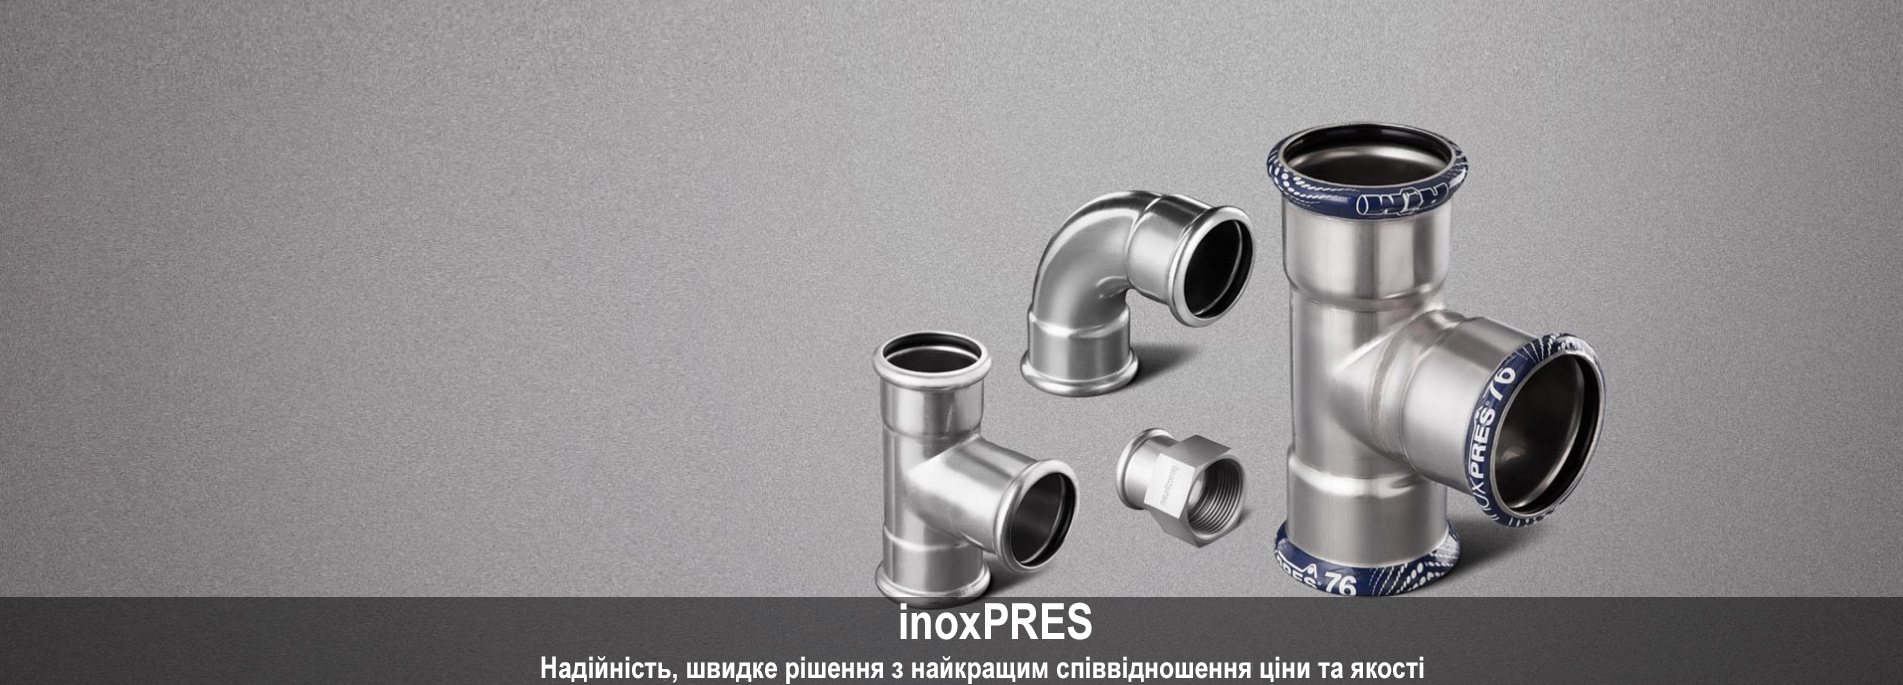 фитинги и трубы под пресс от Inoxpres фото